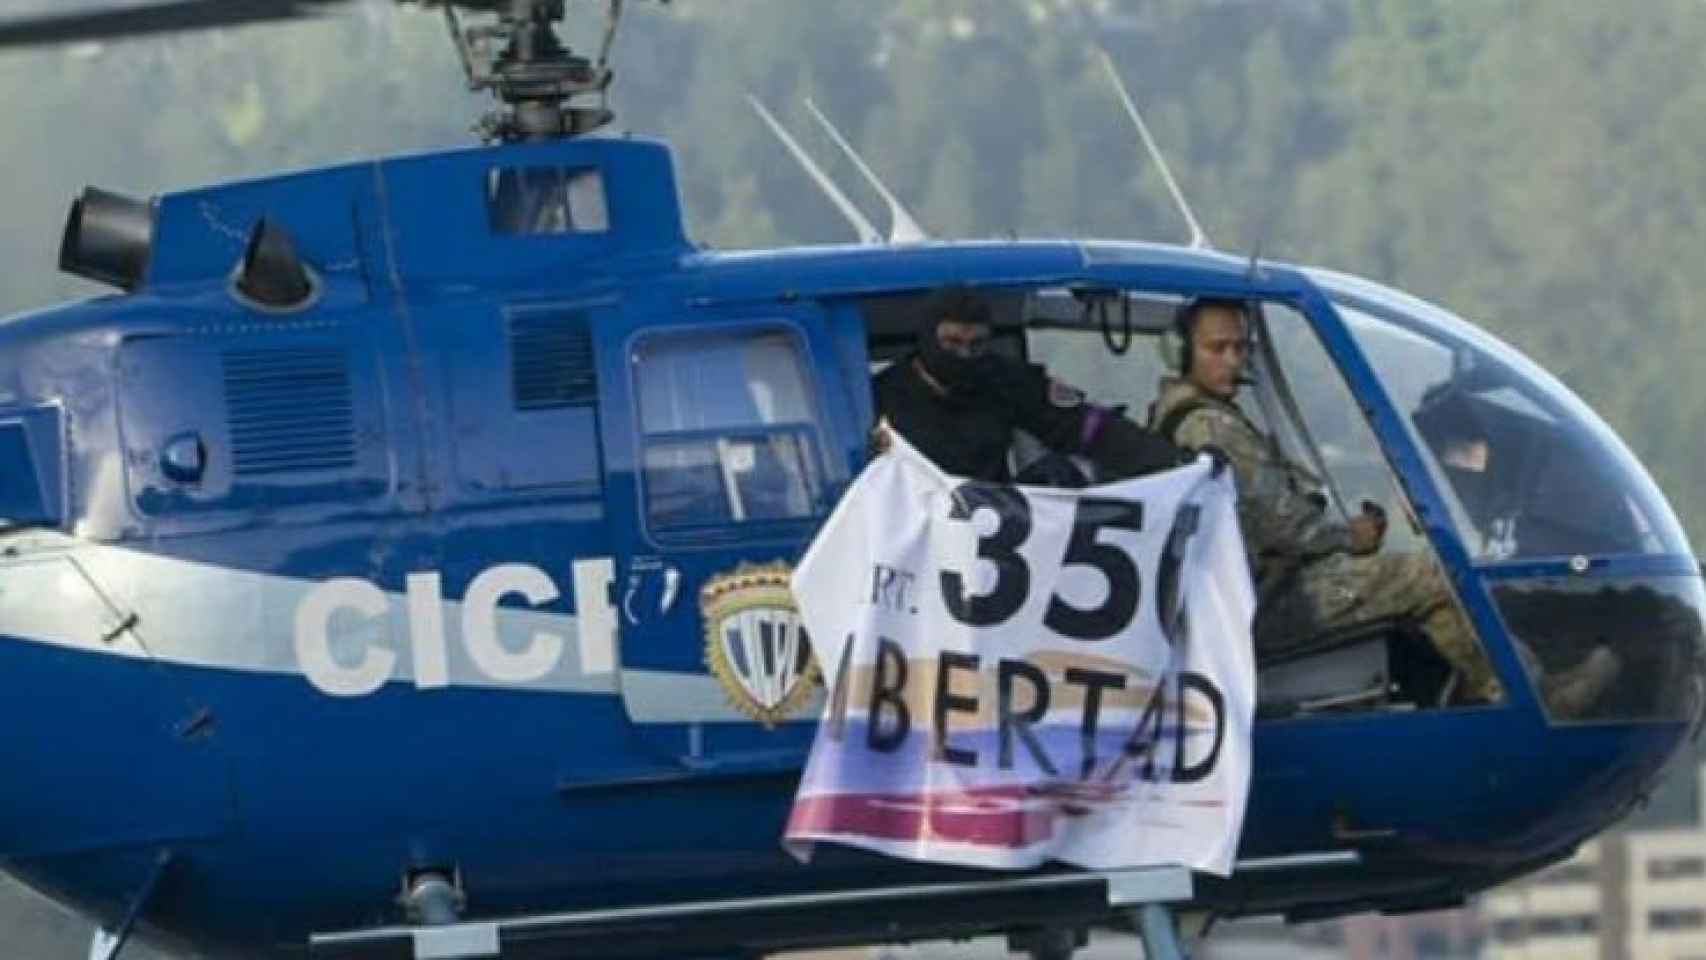 El helicóptero pilotado por Óscar Pérez, con la pancarta en la que se lee 350 libertad.